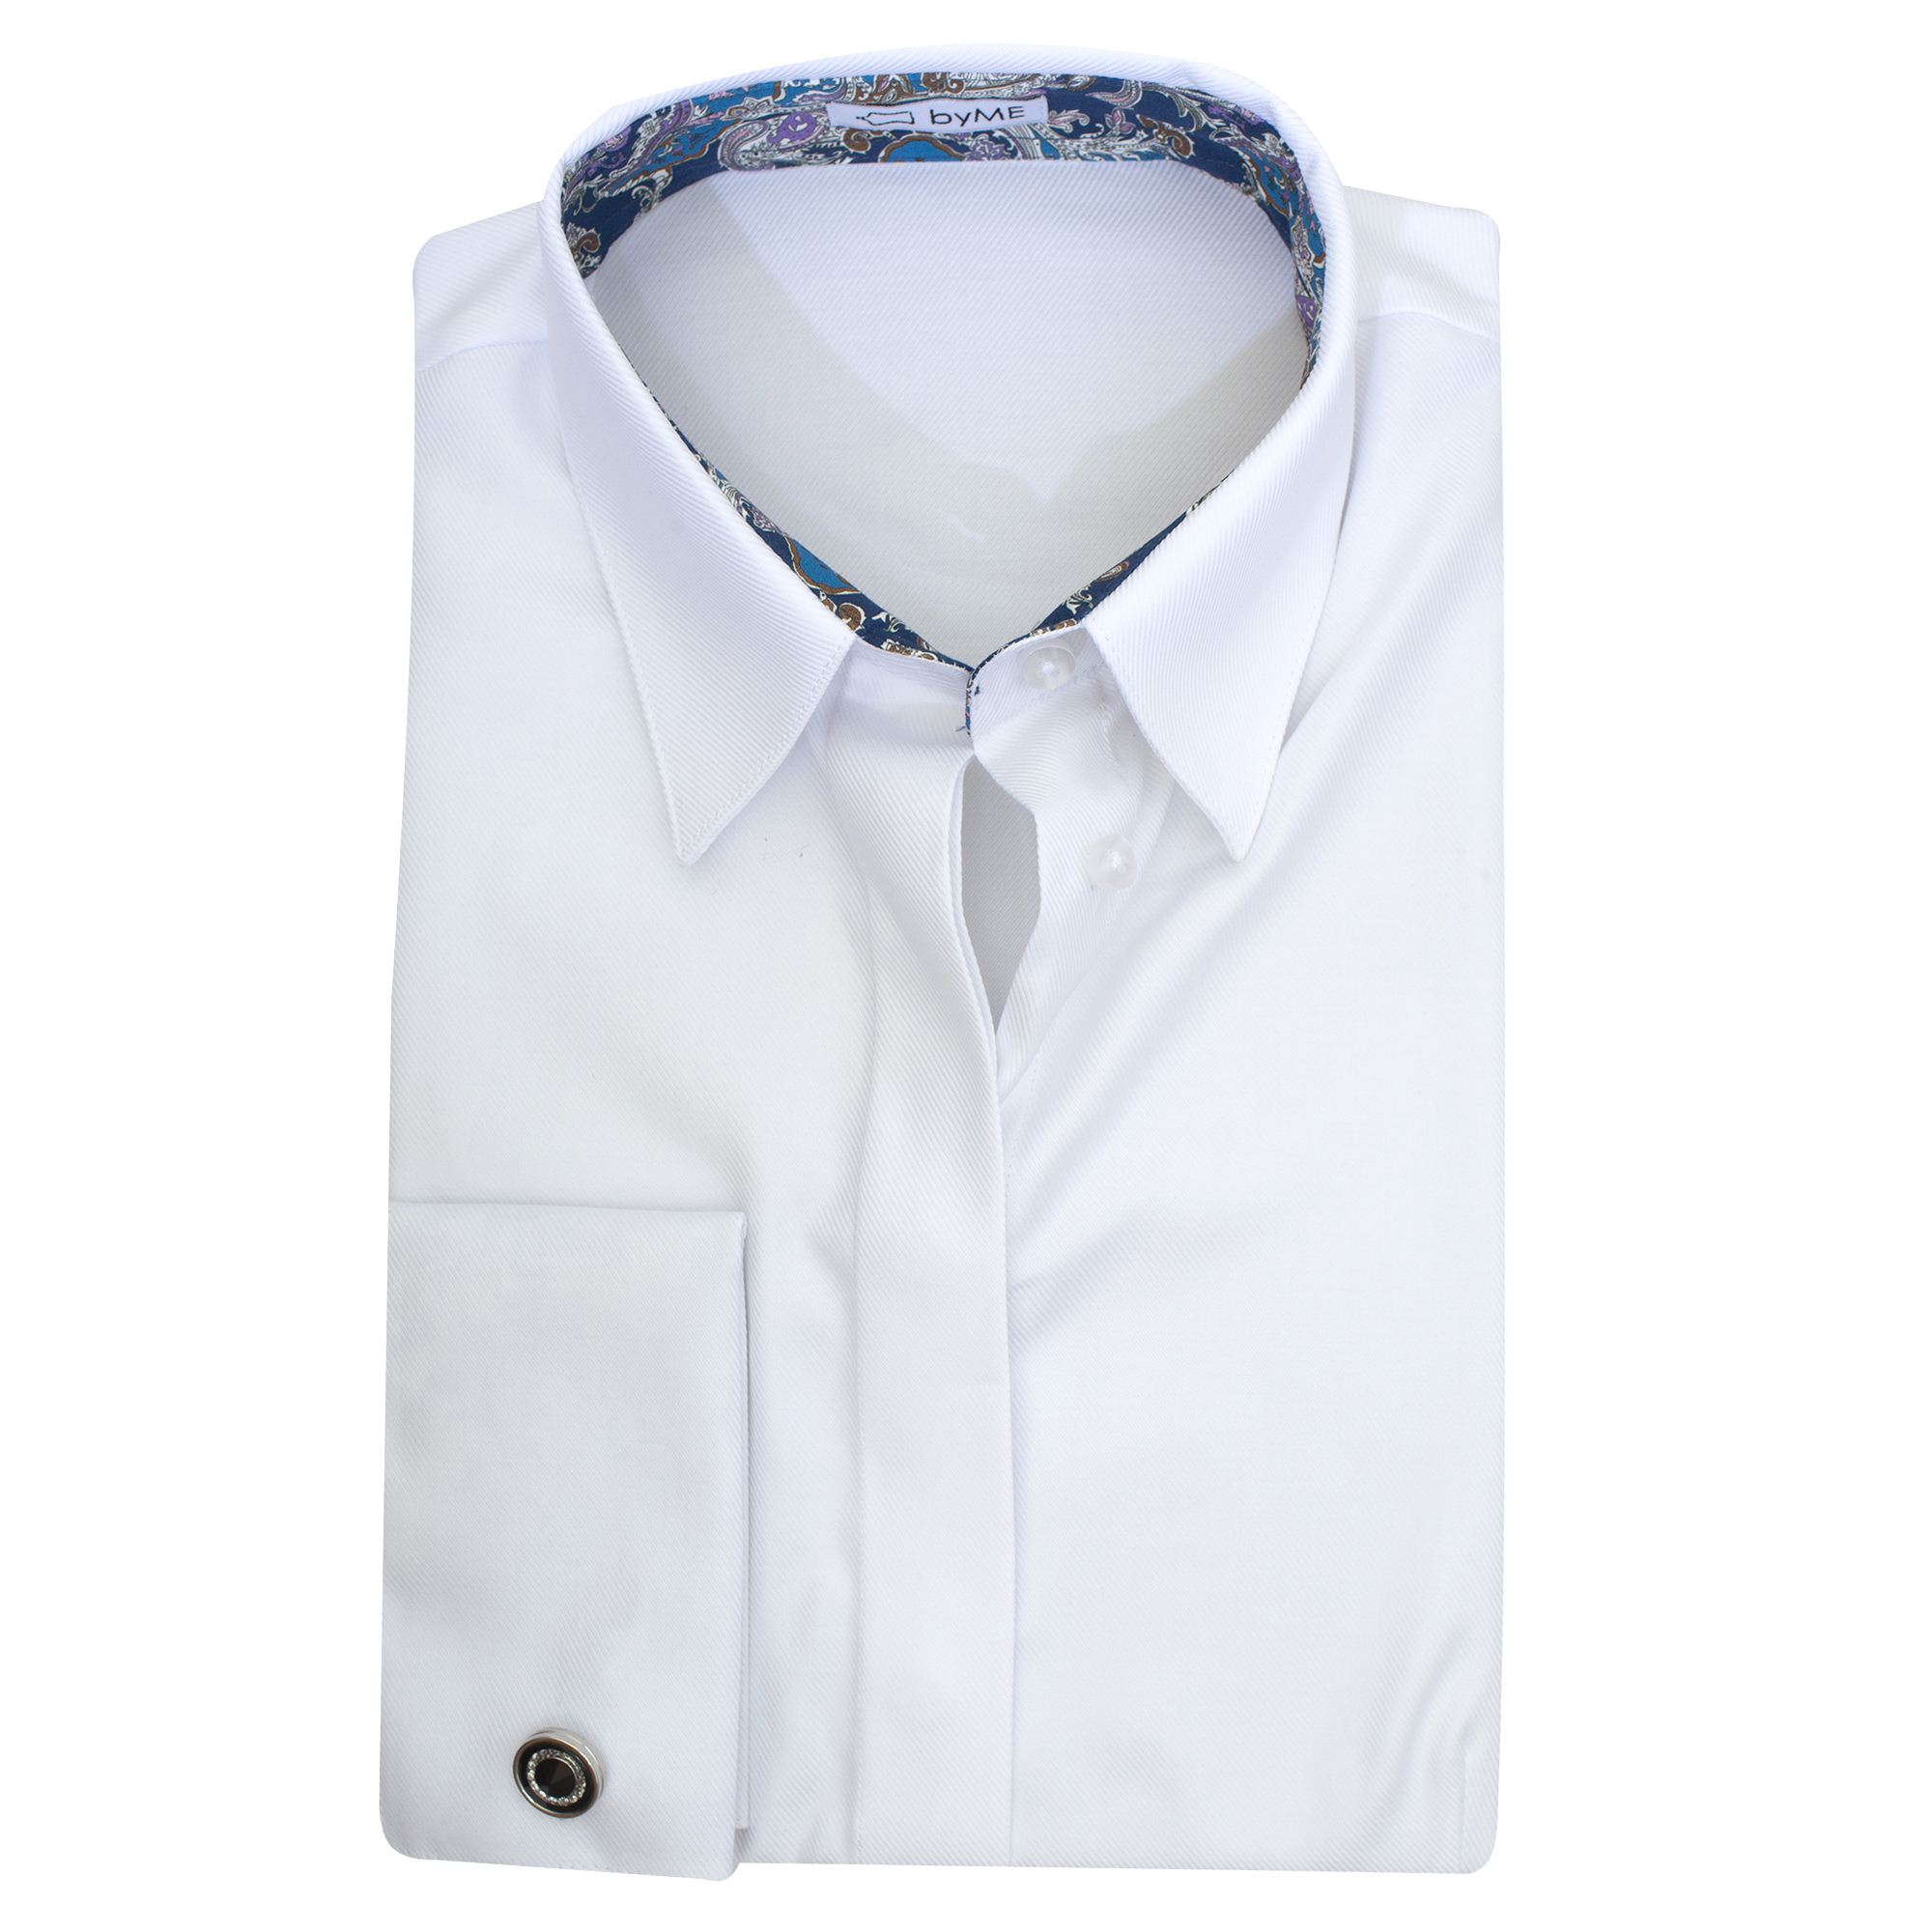 Женская рубашка под запонку с супатной застежкой белая - 8203 от byME 